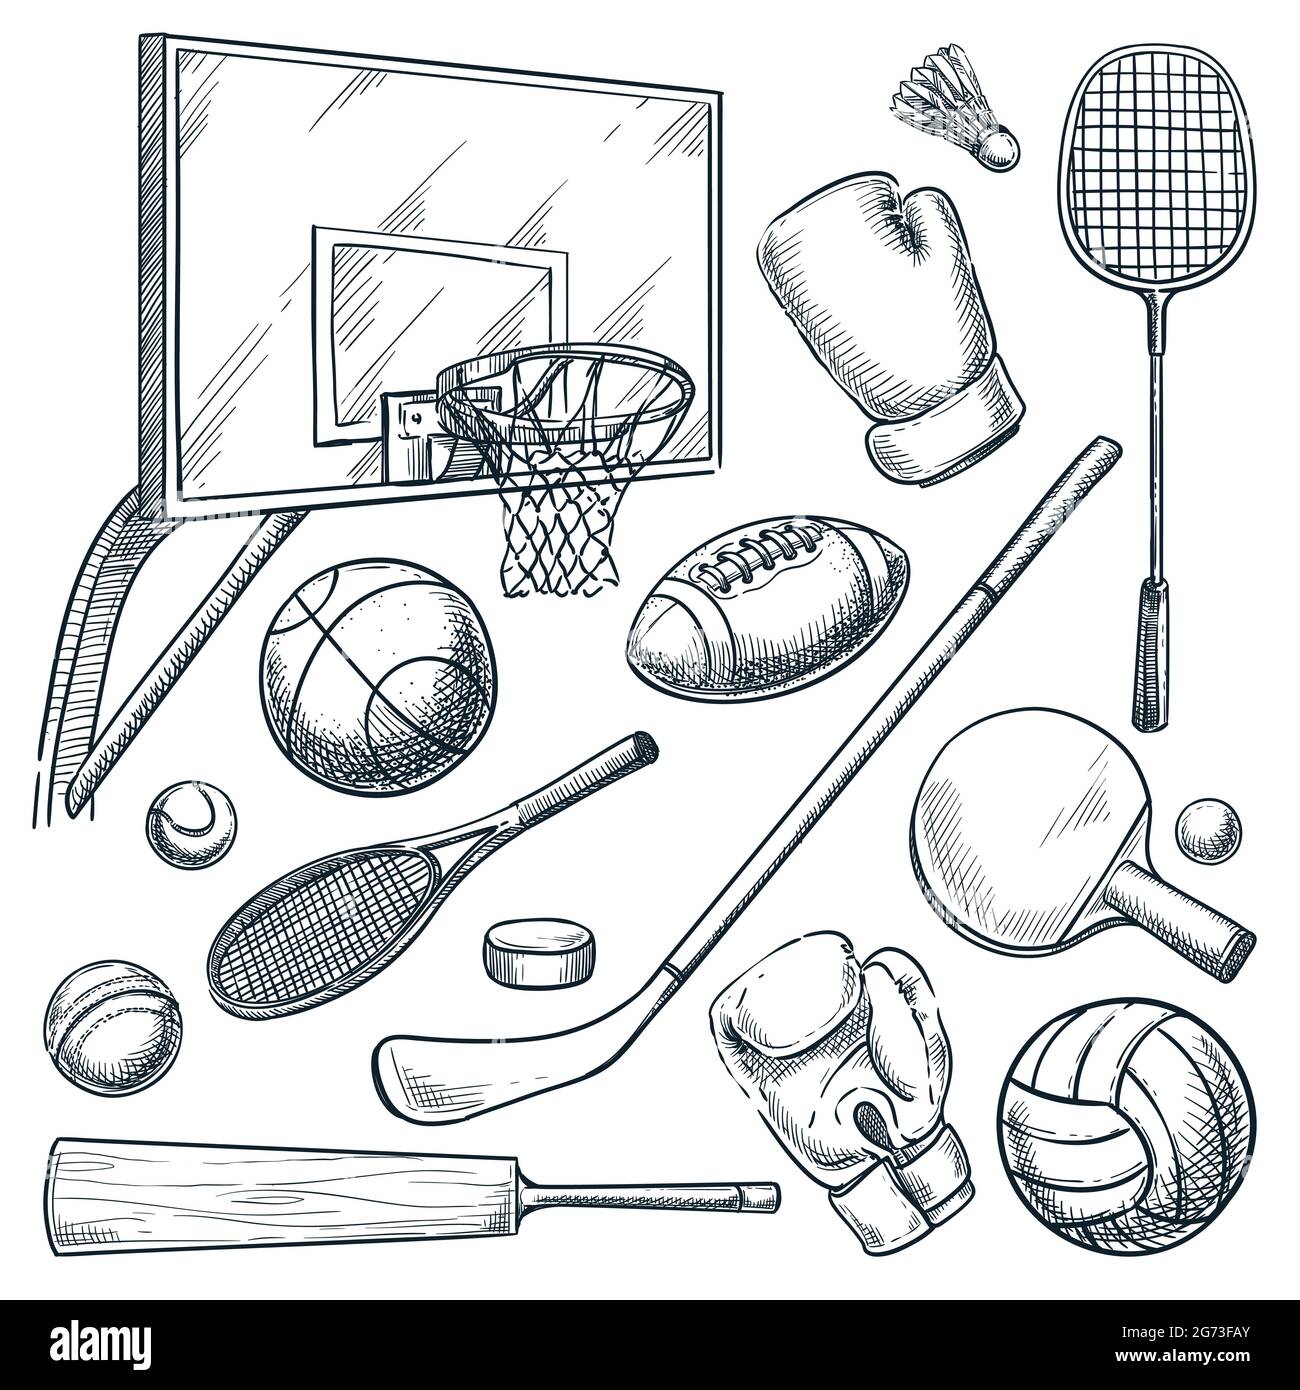 Sportgeräte-Set. Vektorgrafik handgezeichnete Skizze Illustration von Basketball, Tennis, Badminton, Boxen, Hockey, Volleyball, Cricket-Spiele. Kugeln, Schläger Stock Vektor